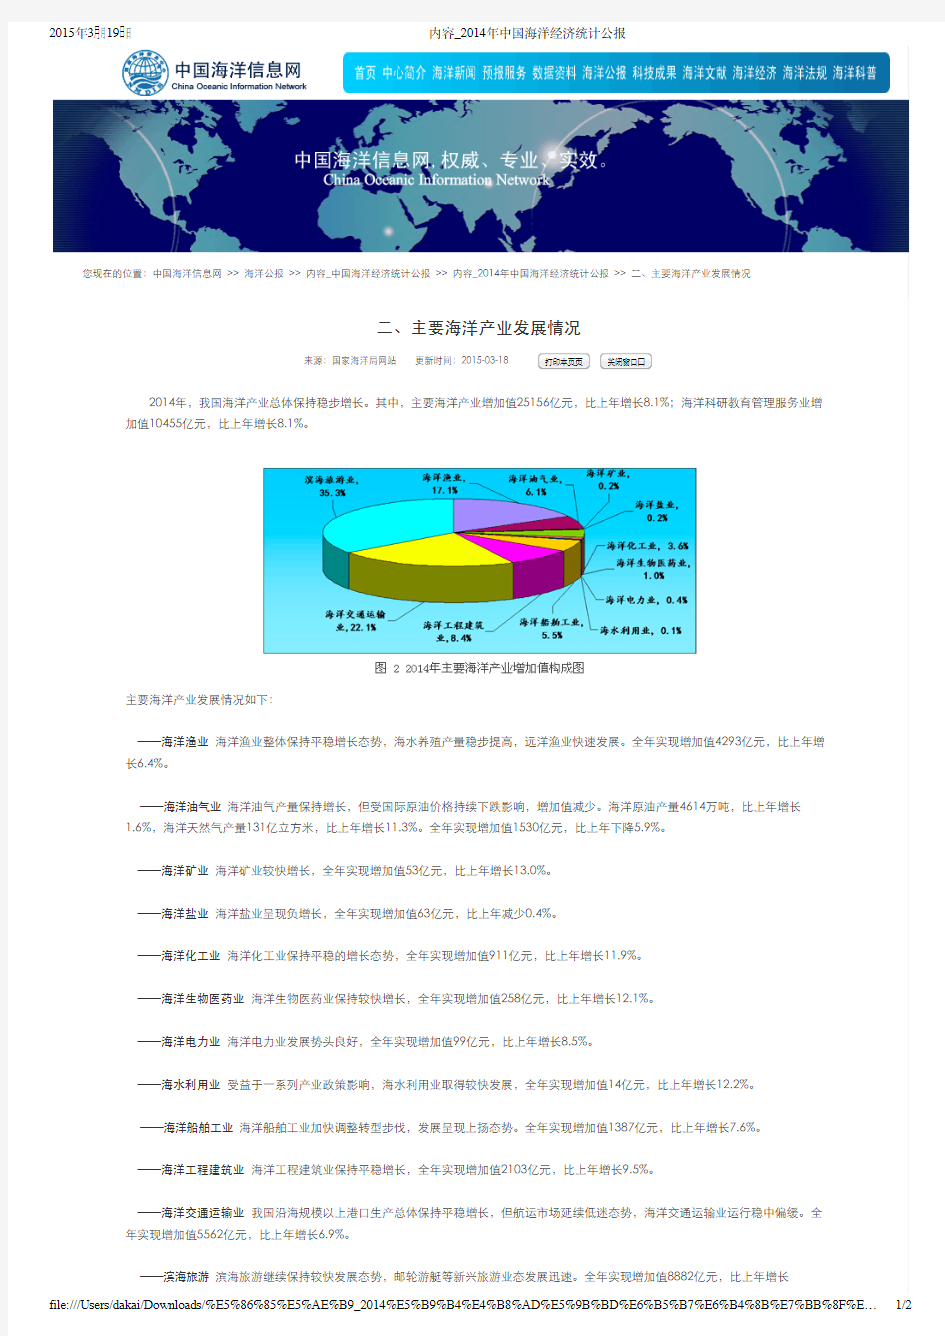 2014年中国海洋经济统计公报